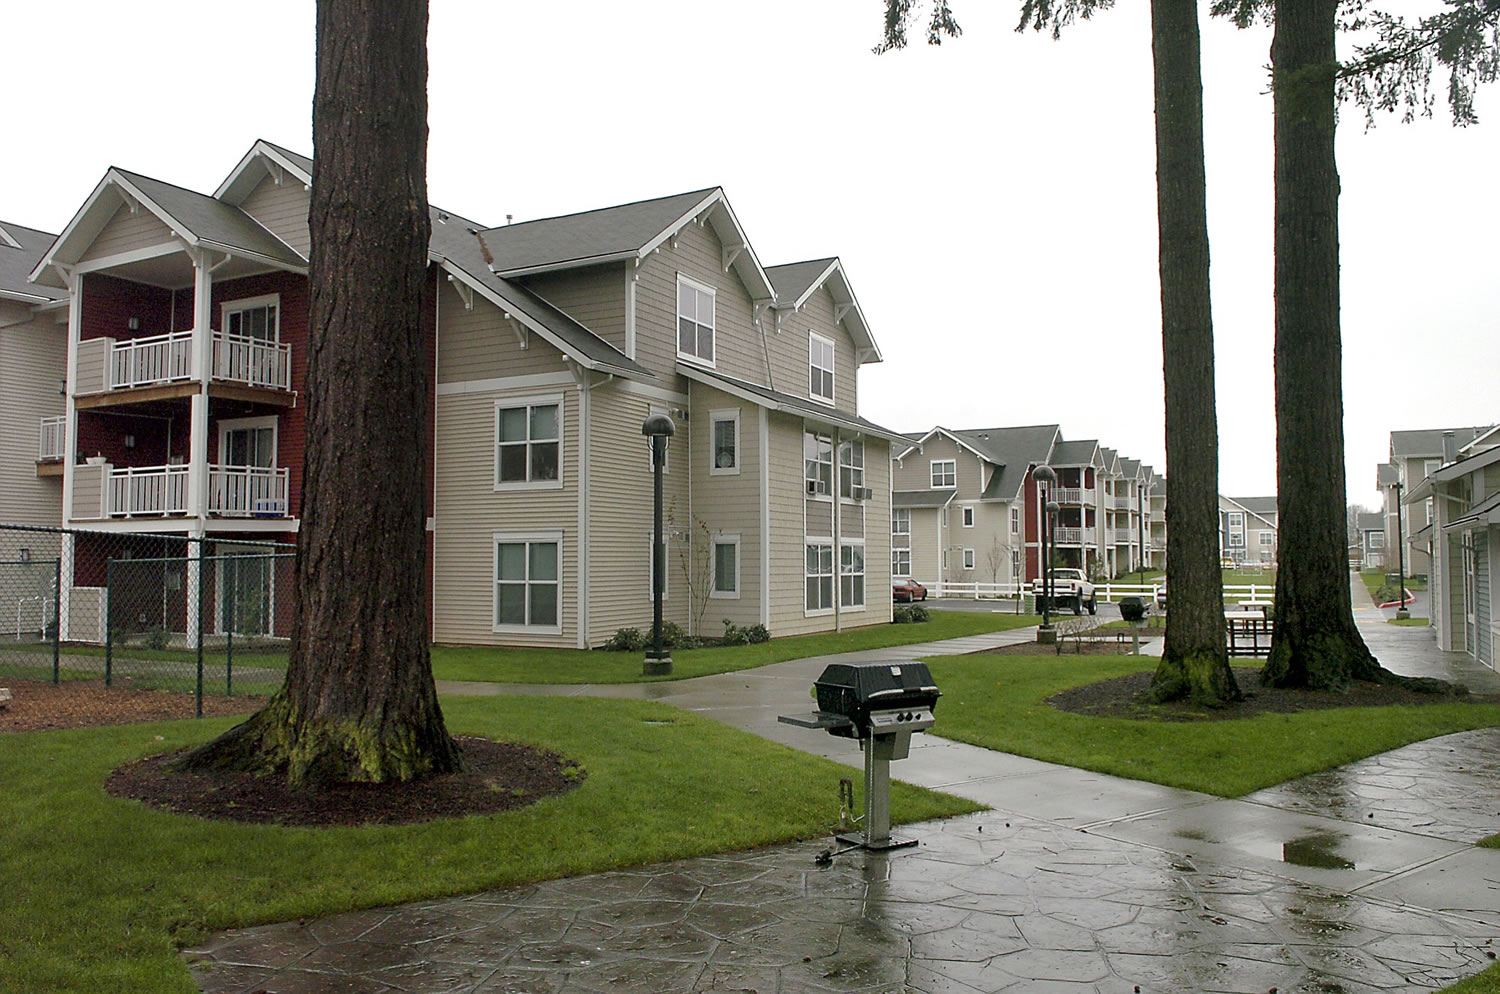 Vancouver Housing Authority's Plum Meadows 162-unit rental housing development